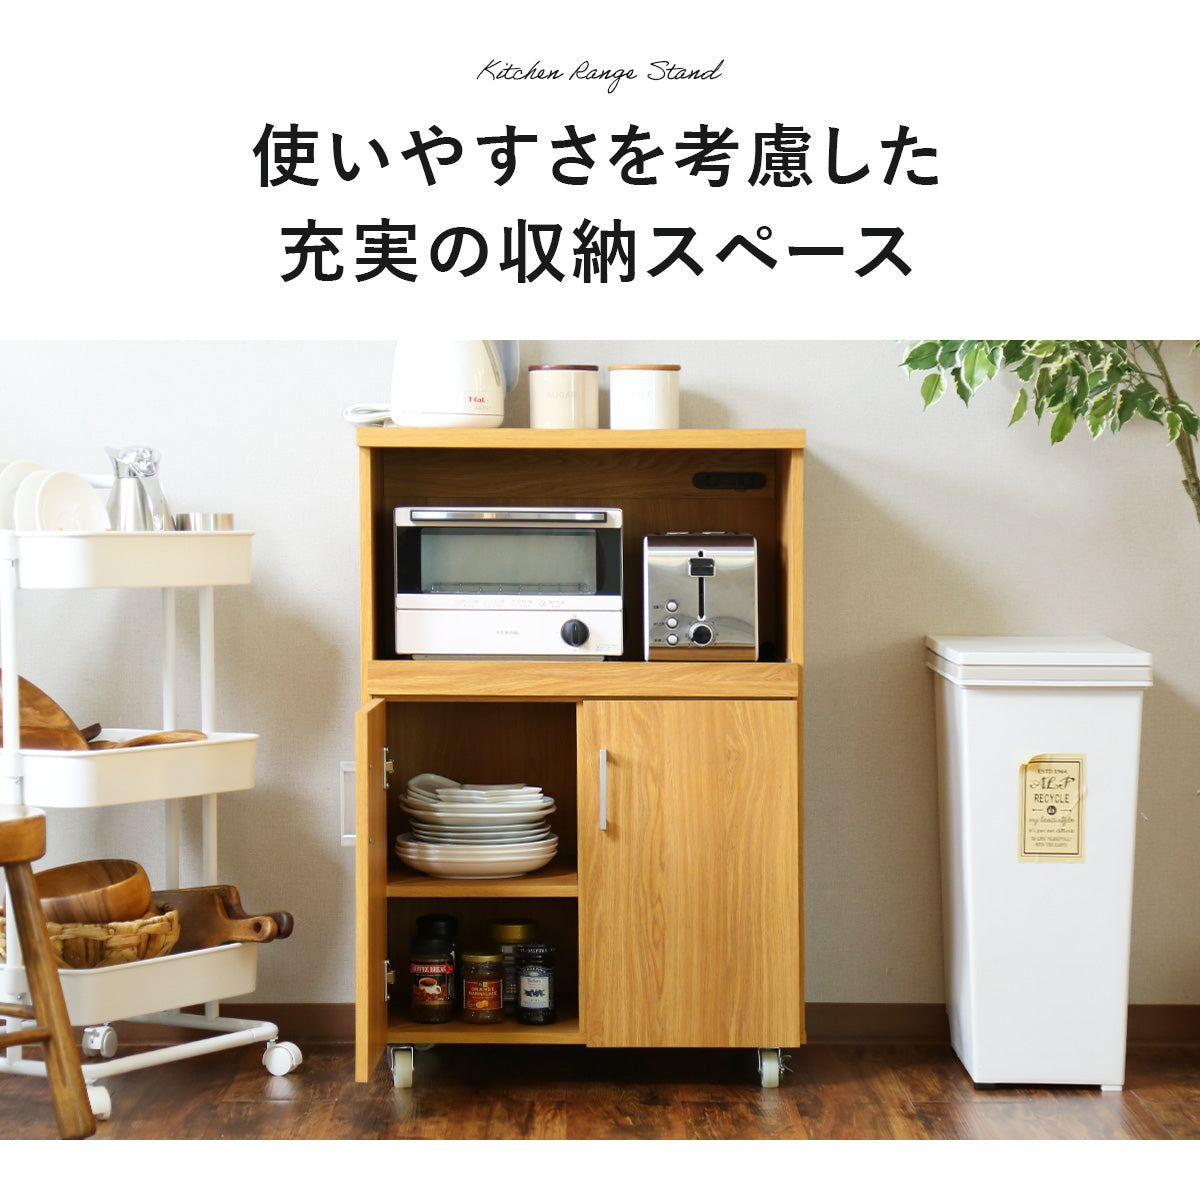 【幅60】 キッチン収納 カイロータイプ60